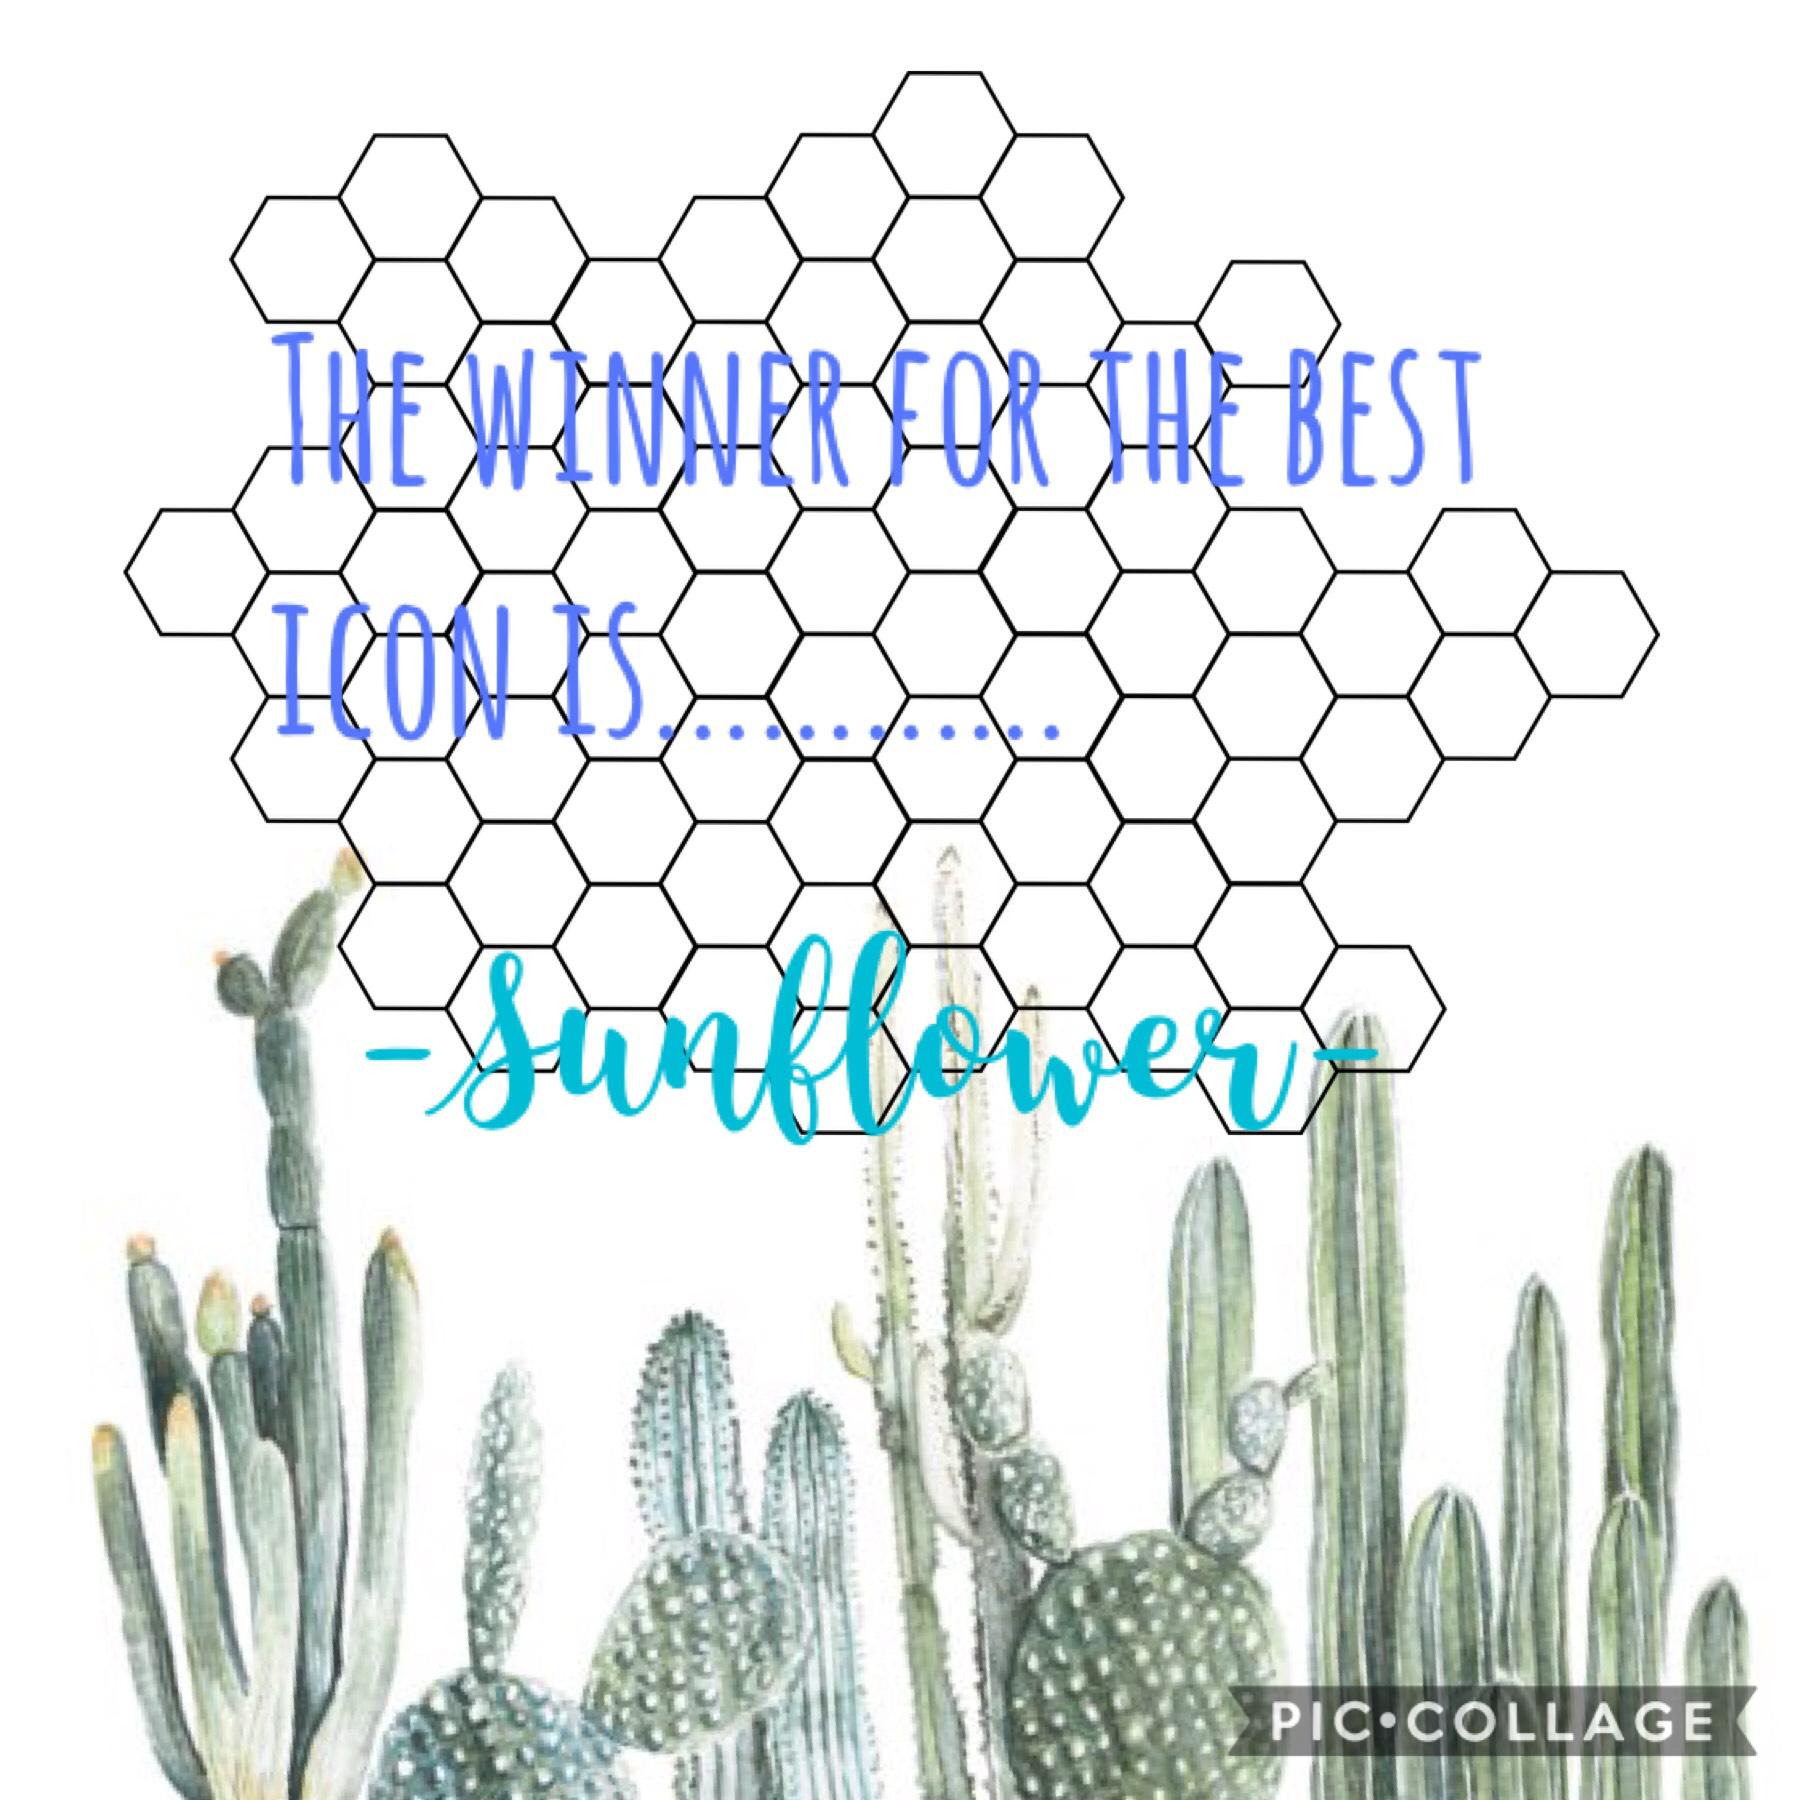 The winner for the best icon is -Sunflower-
#winner #-Sunflower- #cactus #hexagon #blue